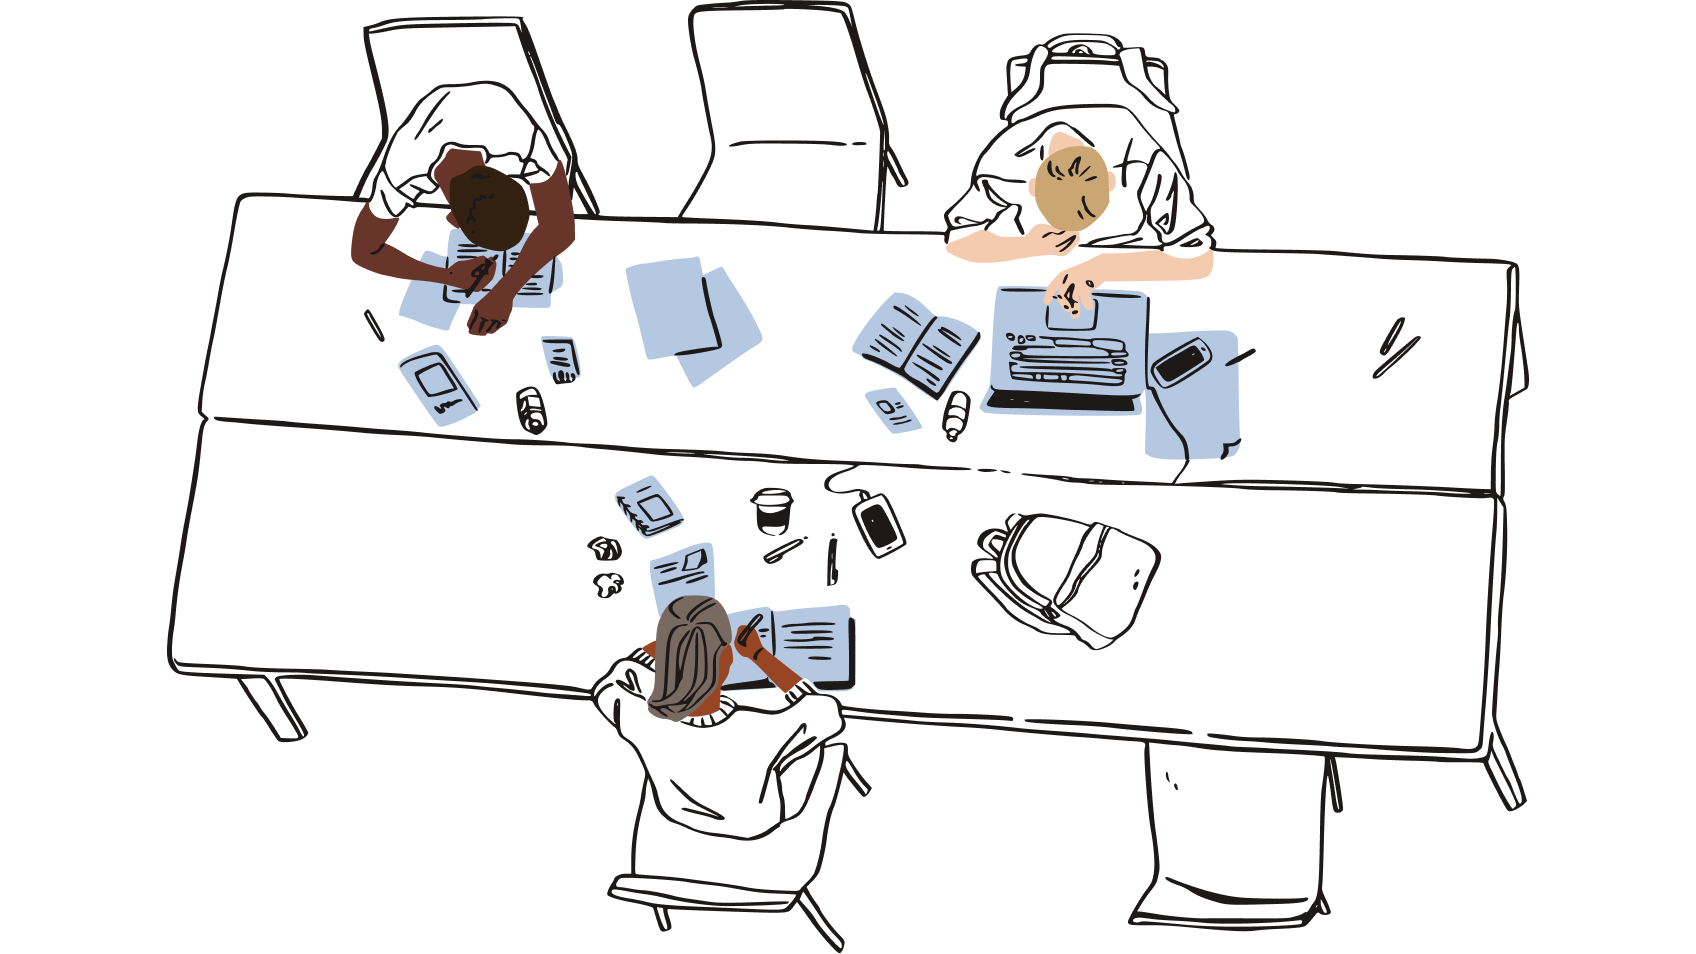 Ilustración de un grupo de personas sentadas en un espacio de trabajo compartido, rodeadas de trozos de papel, que representan el riesgo de dejar copias físicas de las contraseñas cerca del escritorio.